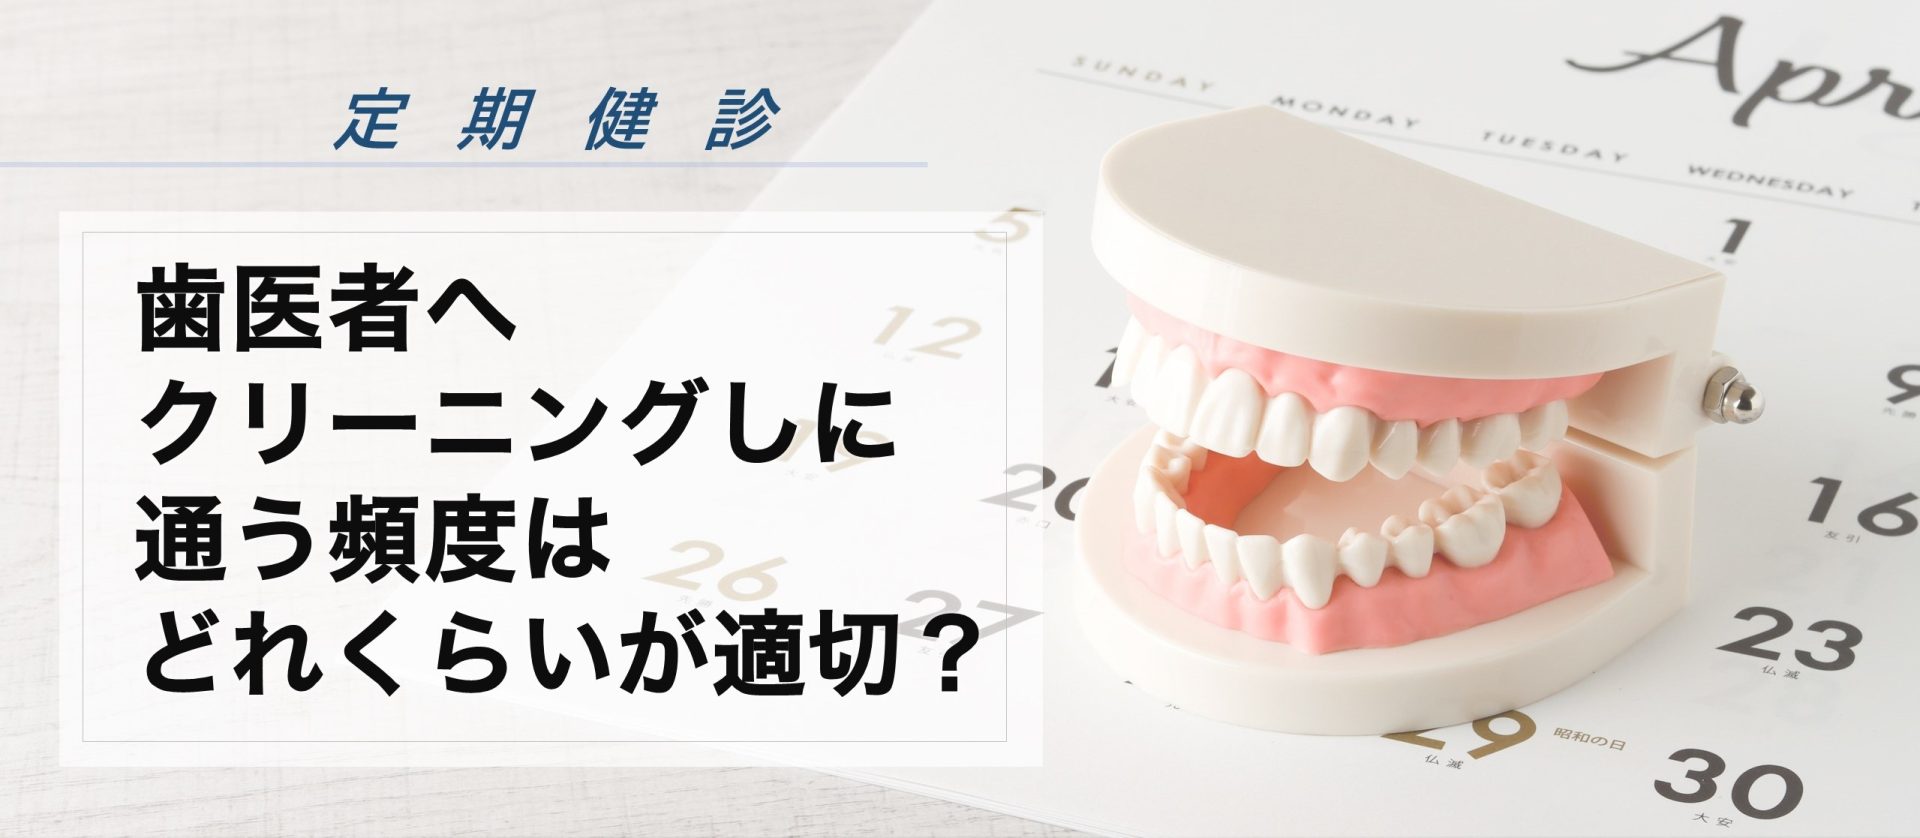 歯医者 どのくらい の 頻度